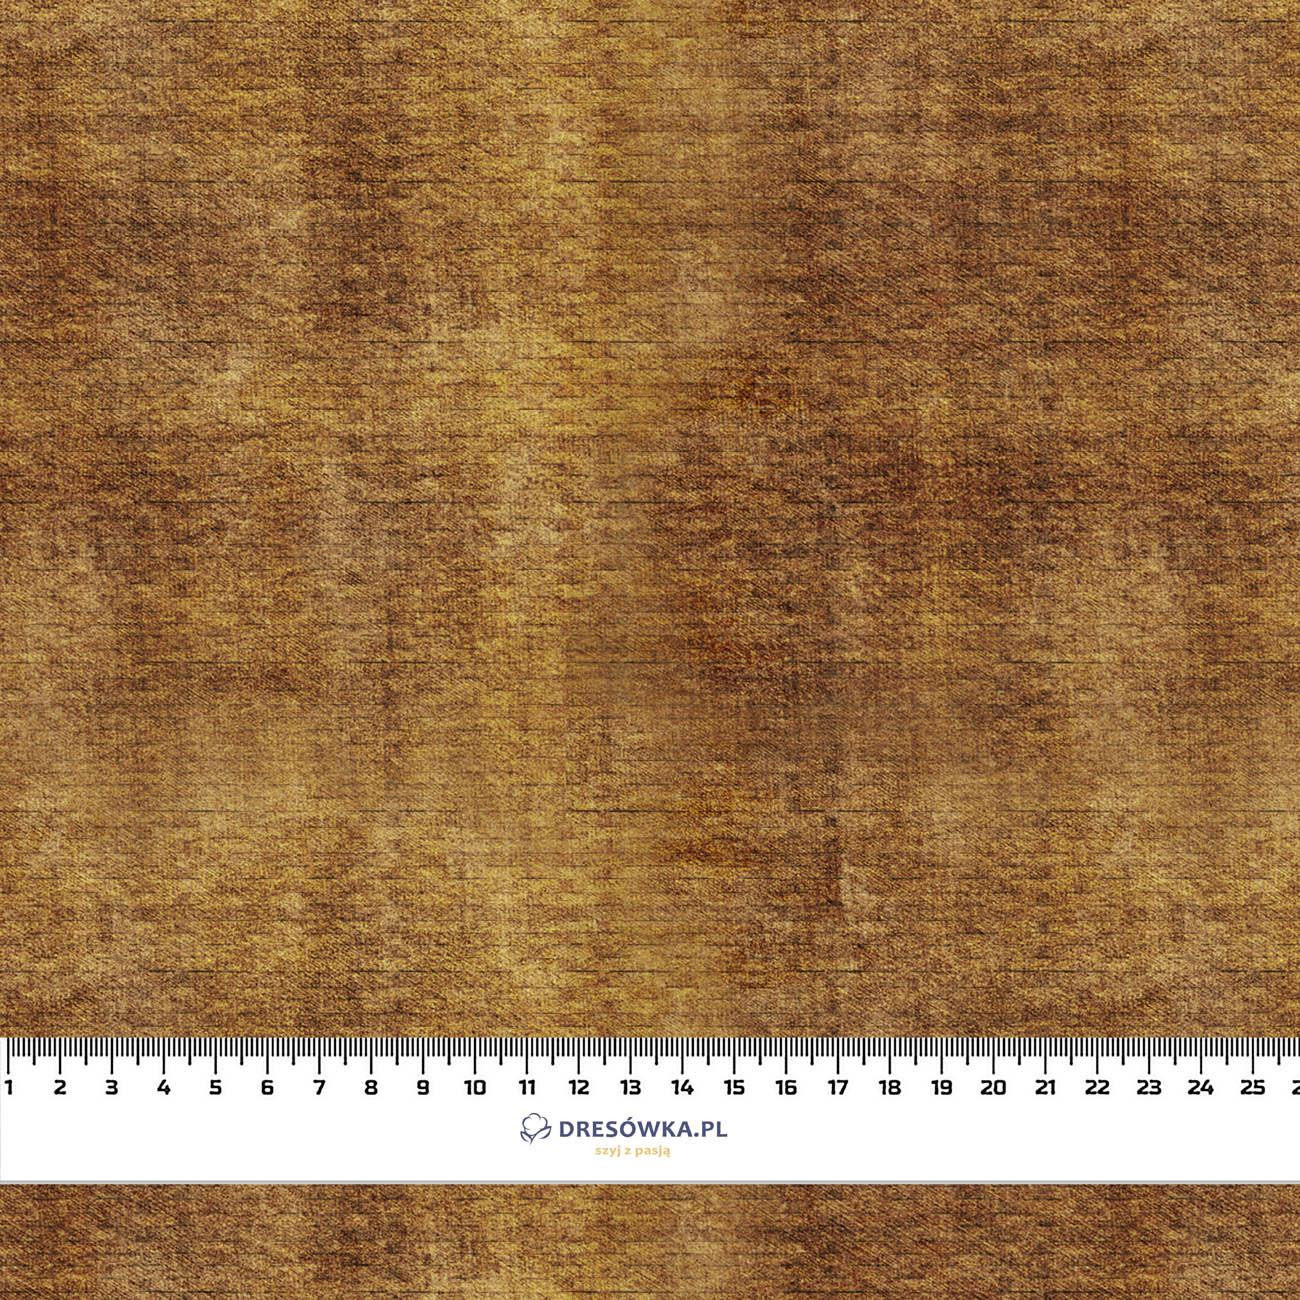 AUTUMN JEANS / brown (AUTUMN COLORS) - Cotton woven fabric